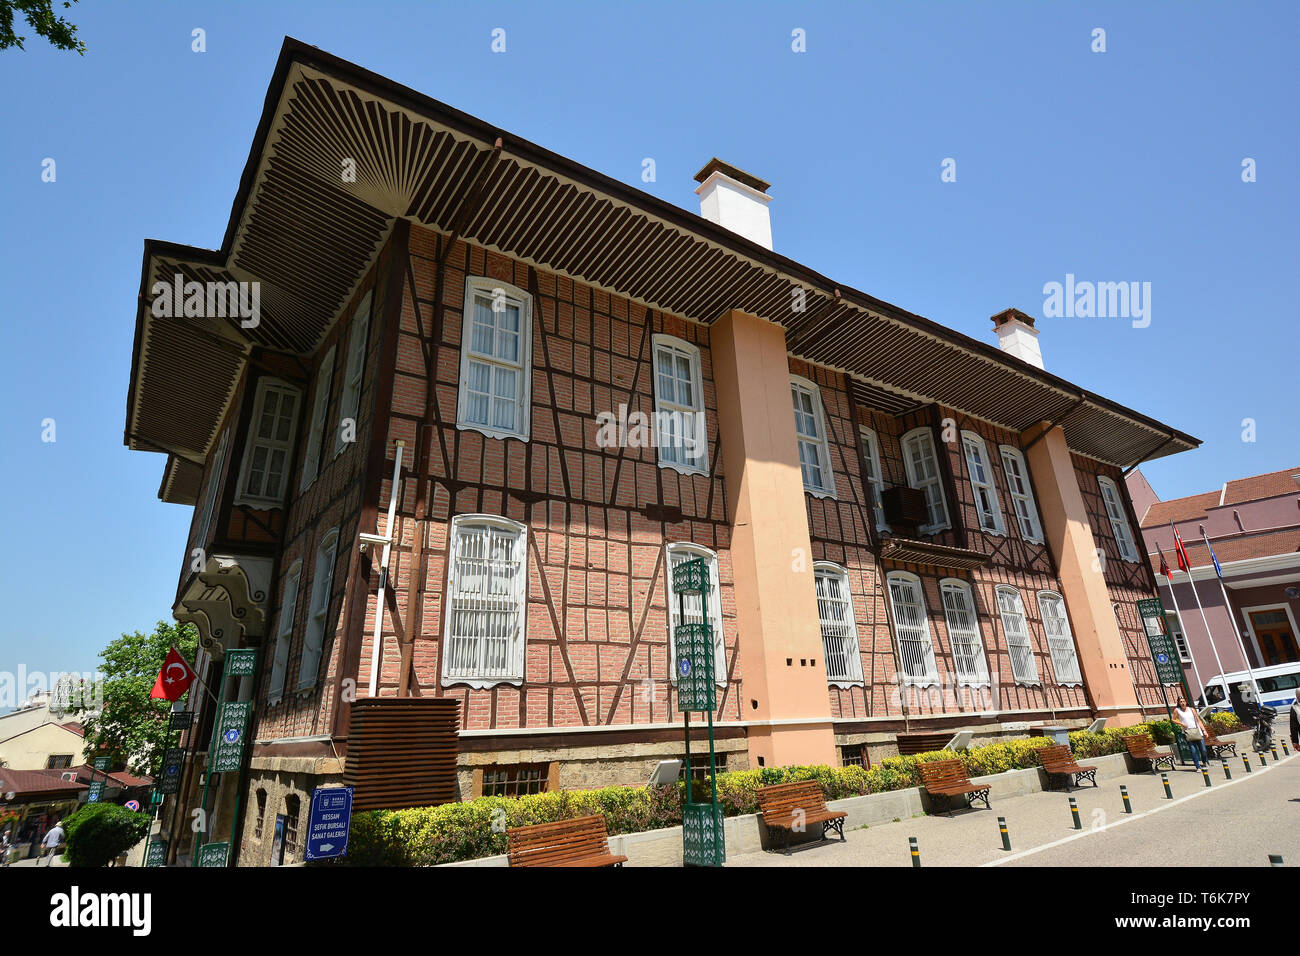 Old town hall, Bursa, Turkey Stock Photo